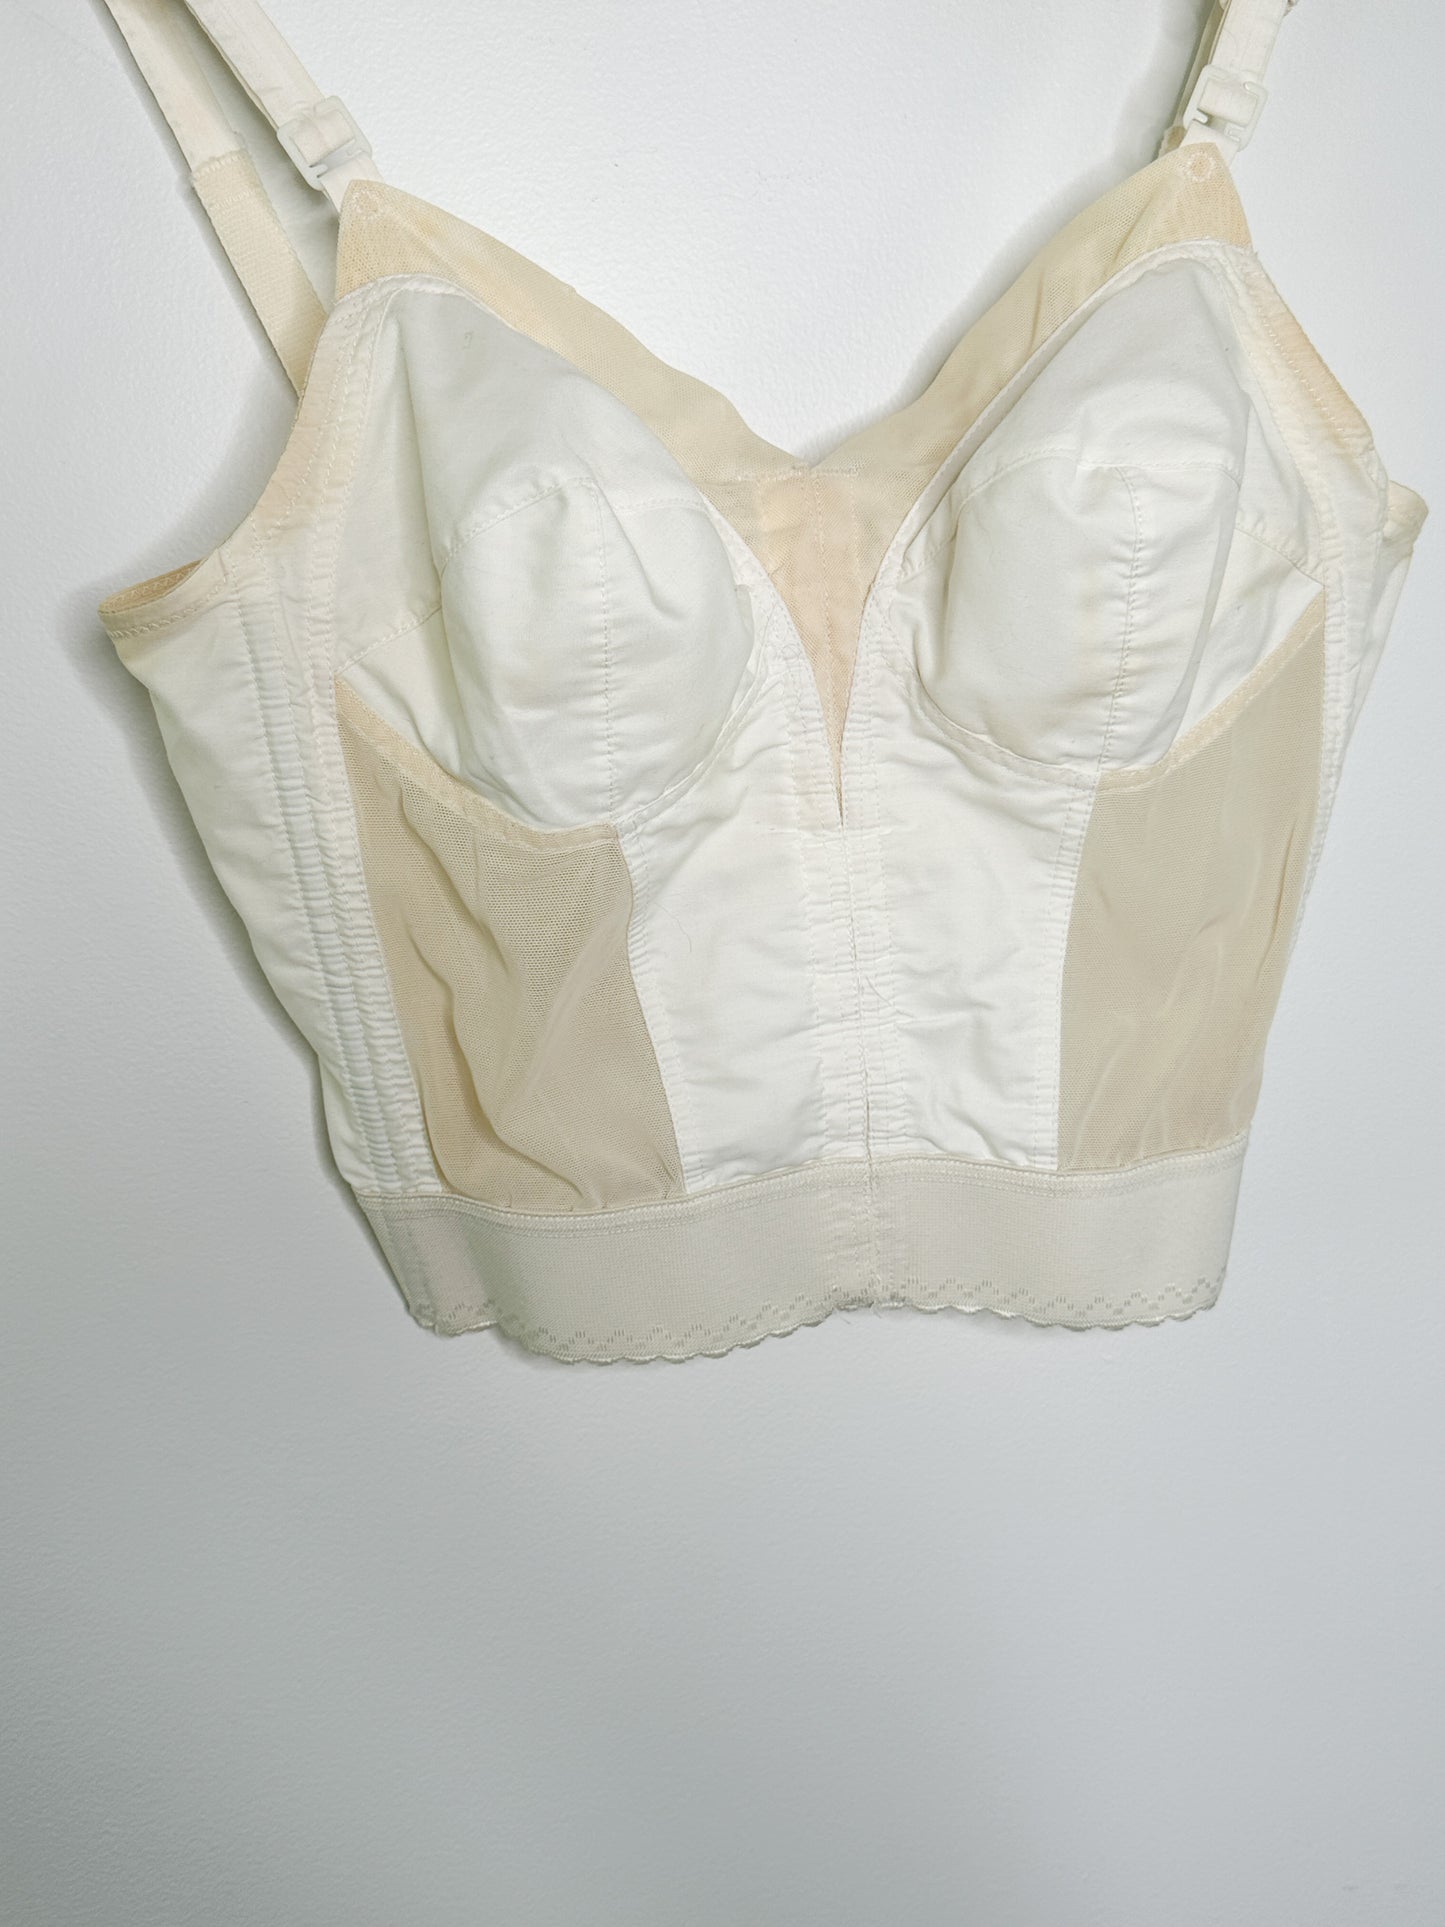 Vintage 36 C Front adjustable bra